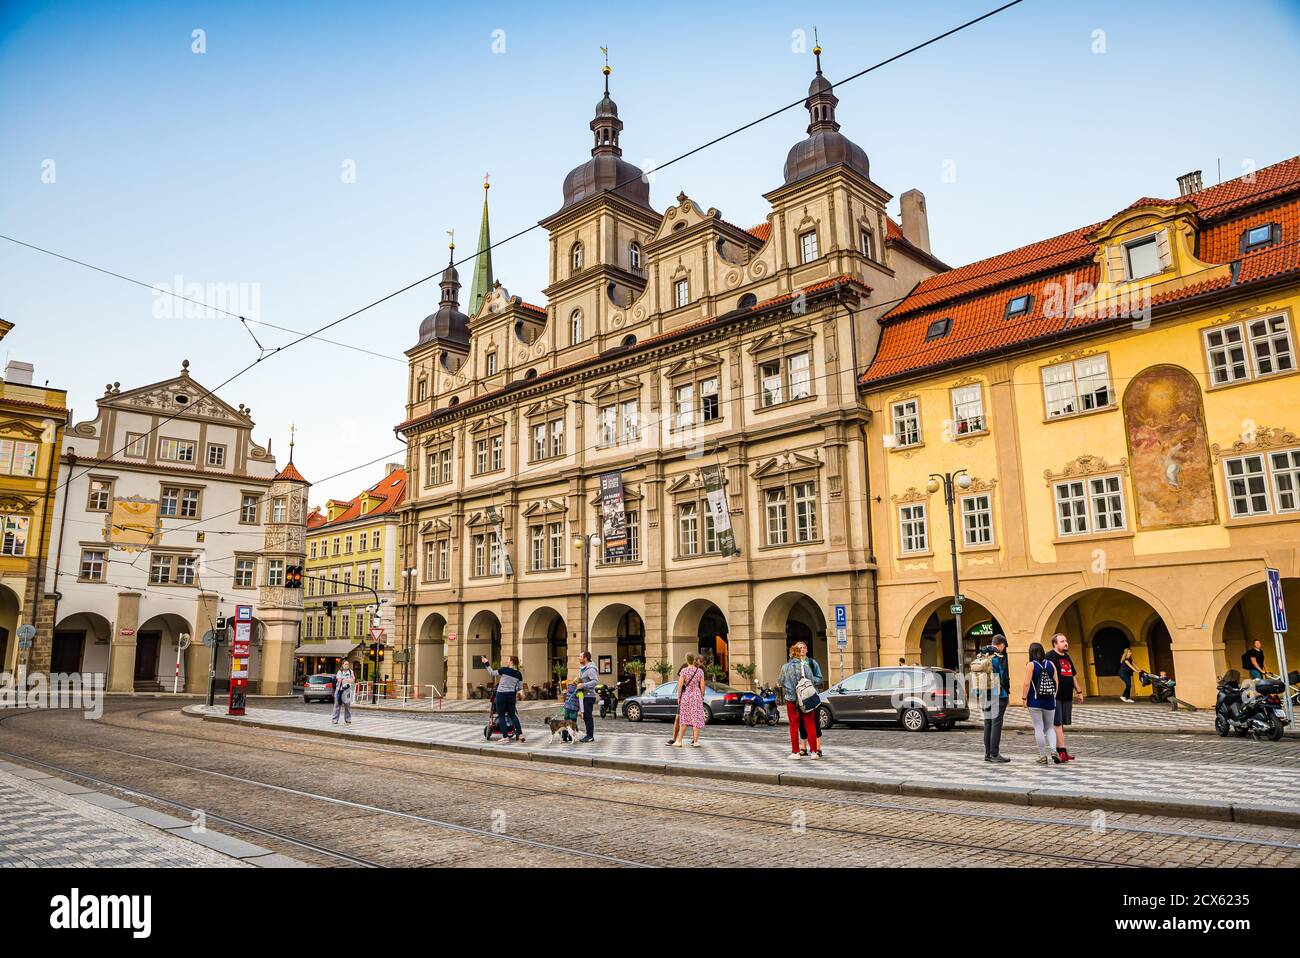 Prague, République tchèque - 20 septembre 2020. Malostranske namesti sans touristes pendant le nombre croissant de personnes positives Covid-19 Banque D'Images